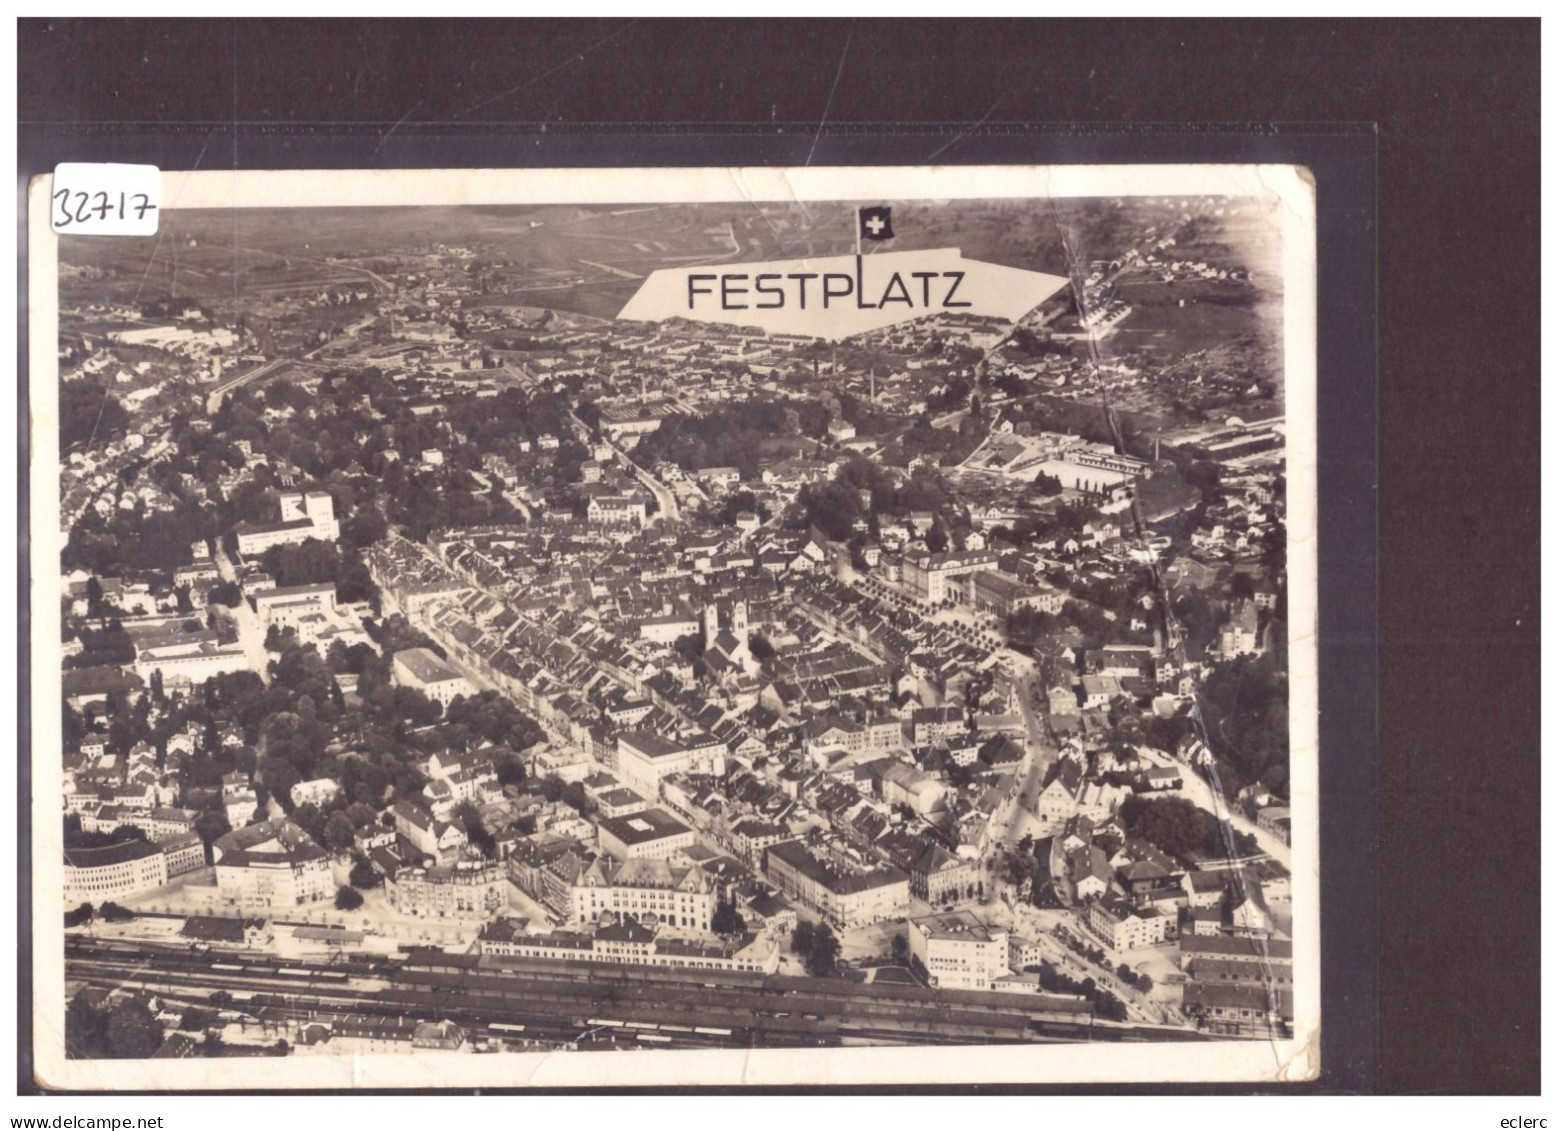 GRÖSSE 10x15cm - WINTERTHUR - EIDG. TURNFEST 1936 - ( FORT PLI VERTICAL A DROITE ) - Winterthur